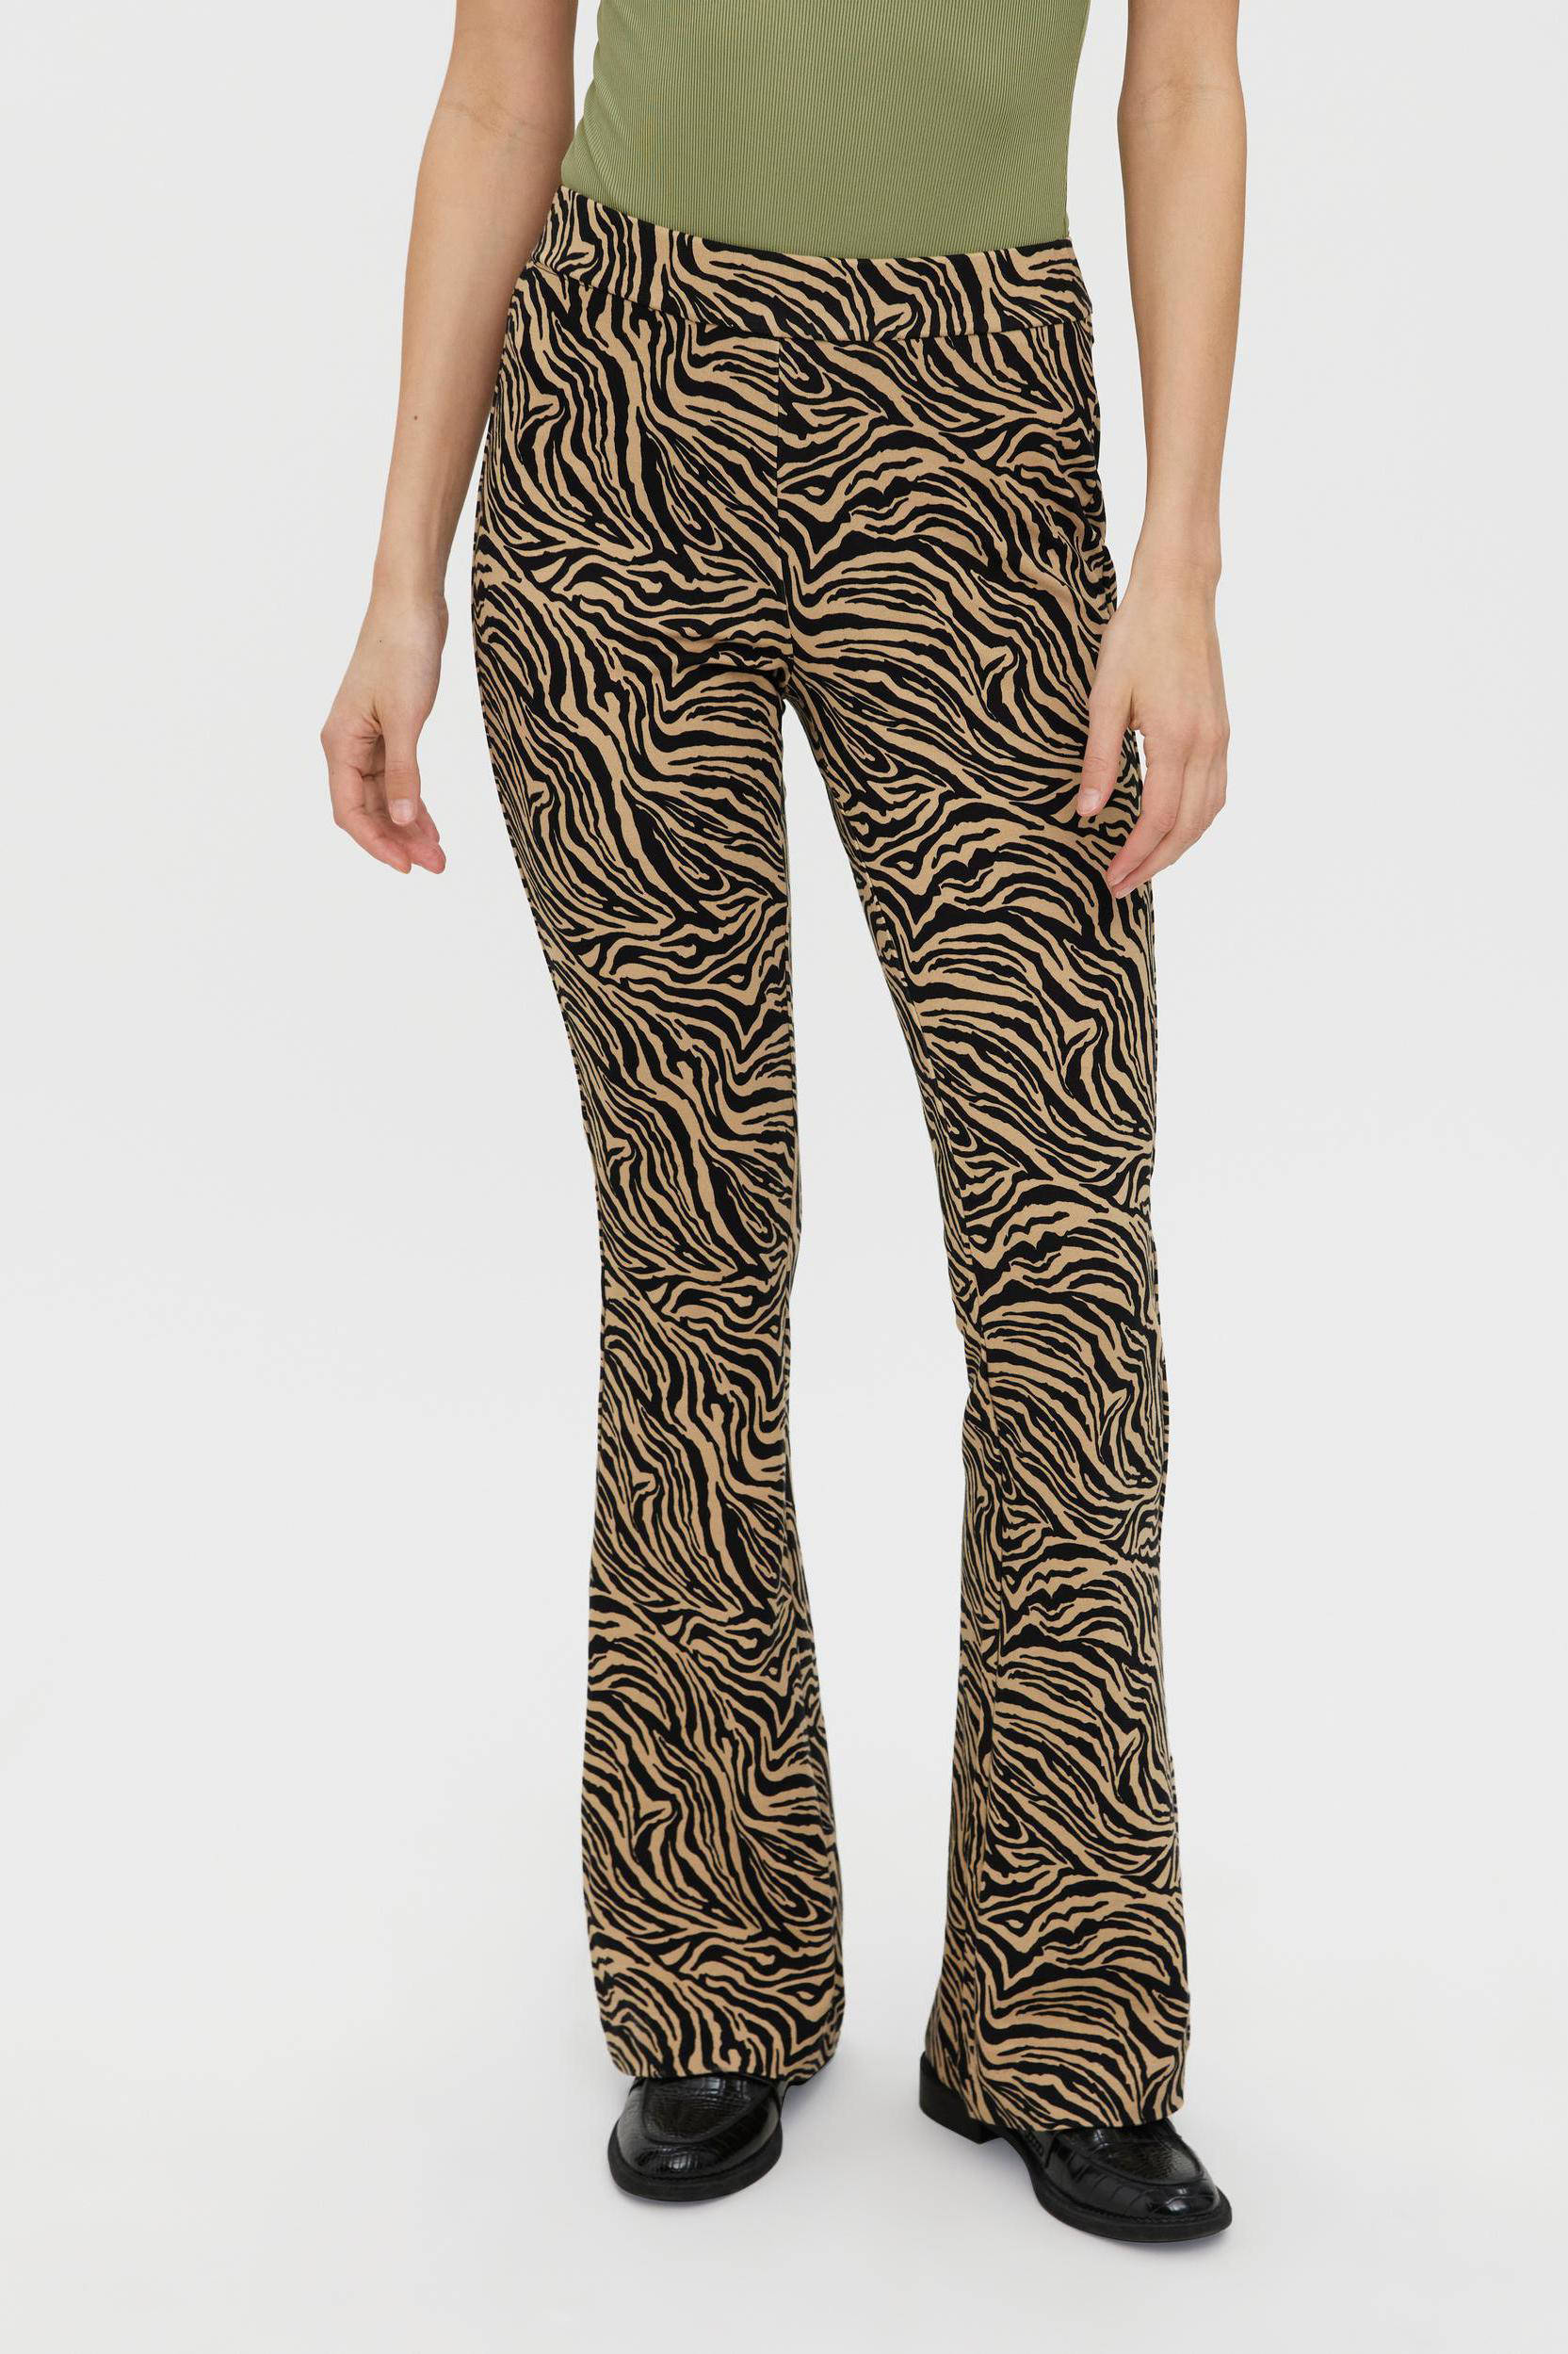 Vero Moda Stoffen broek beige-zwart dierenprint Mode Broeken Stoffen broeken 